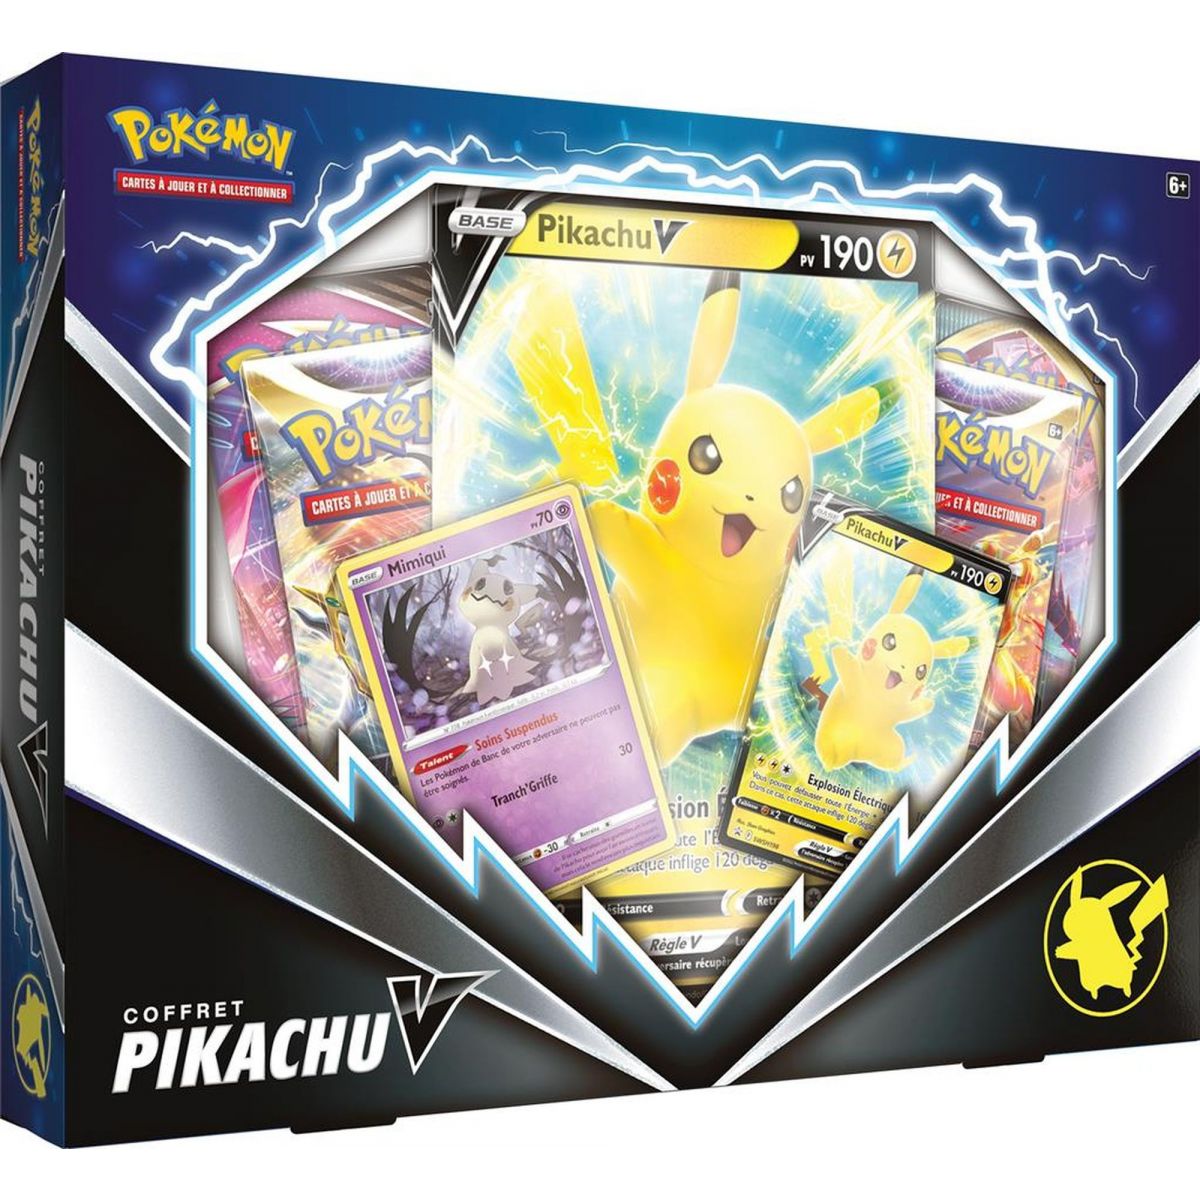 Pokémon - Box set - Pikachu V - February 2022 - FR